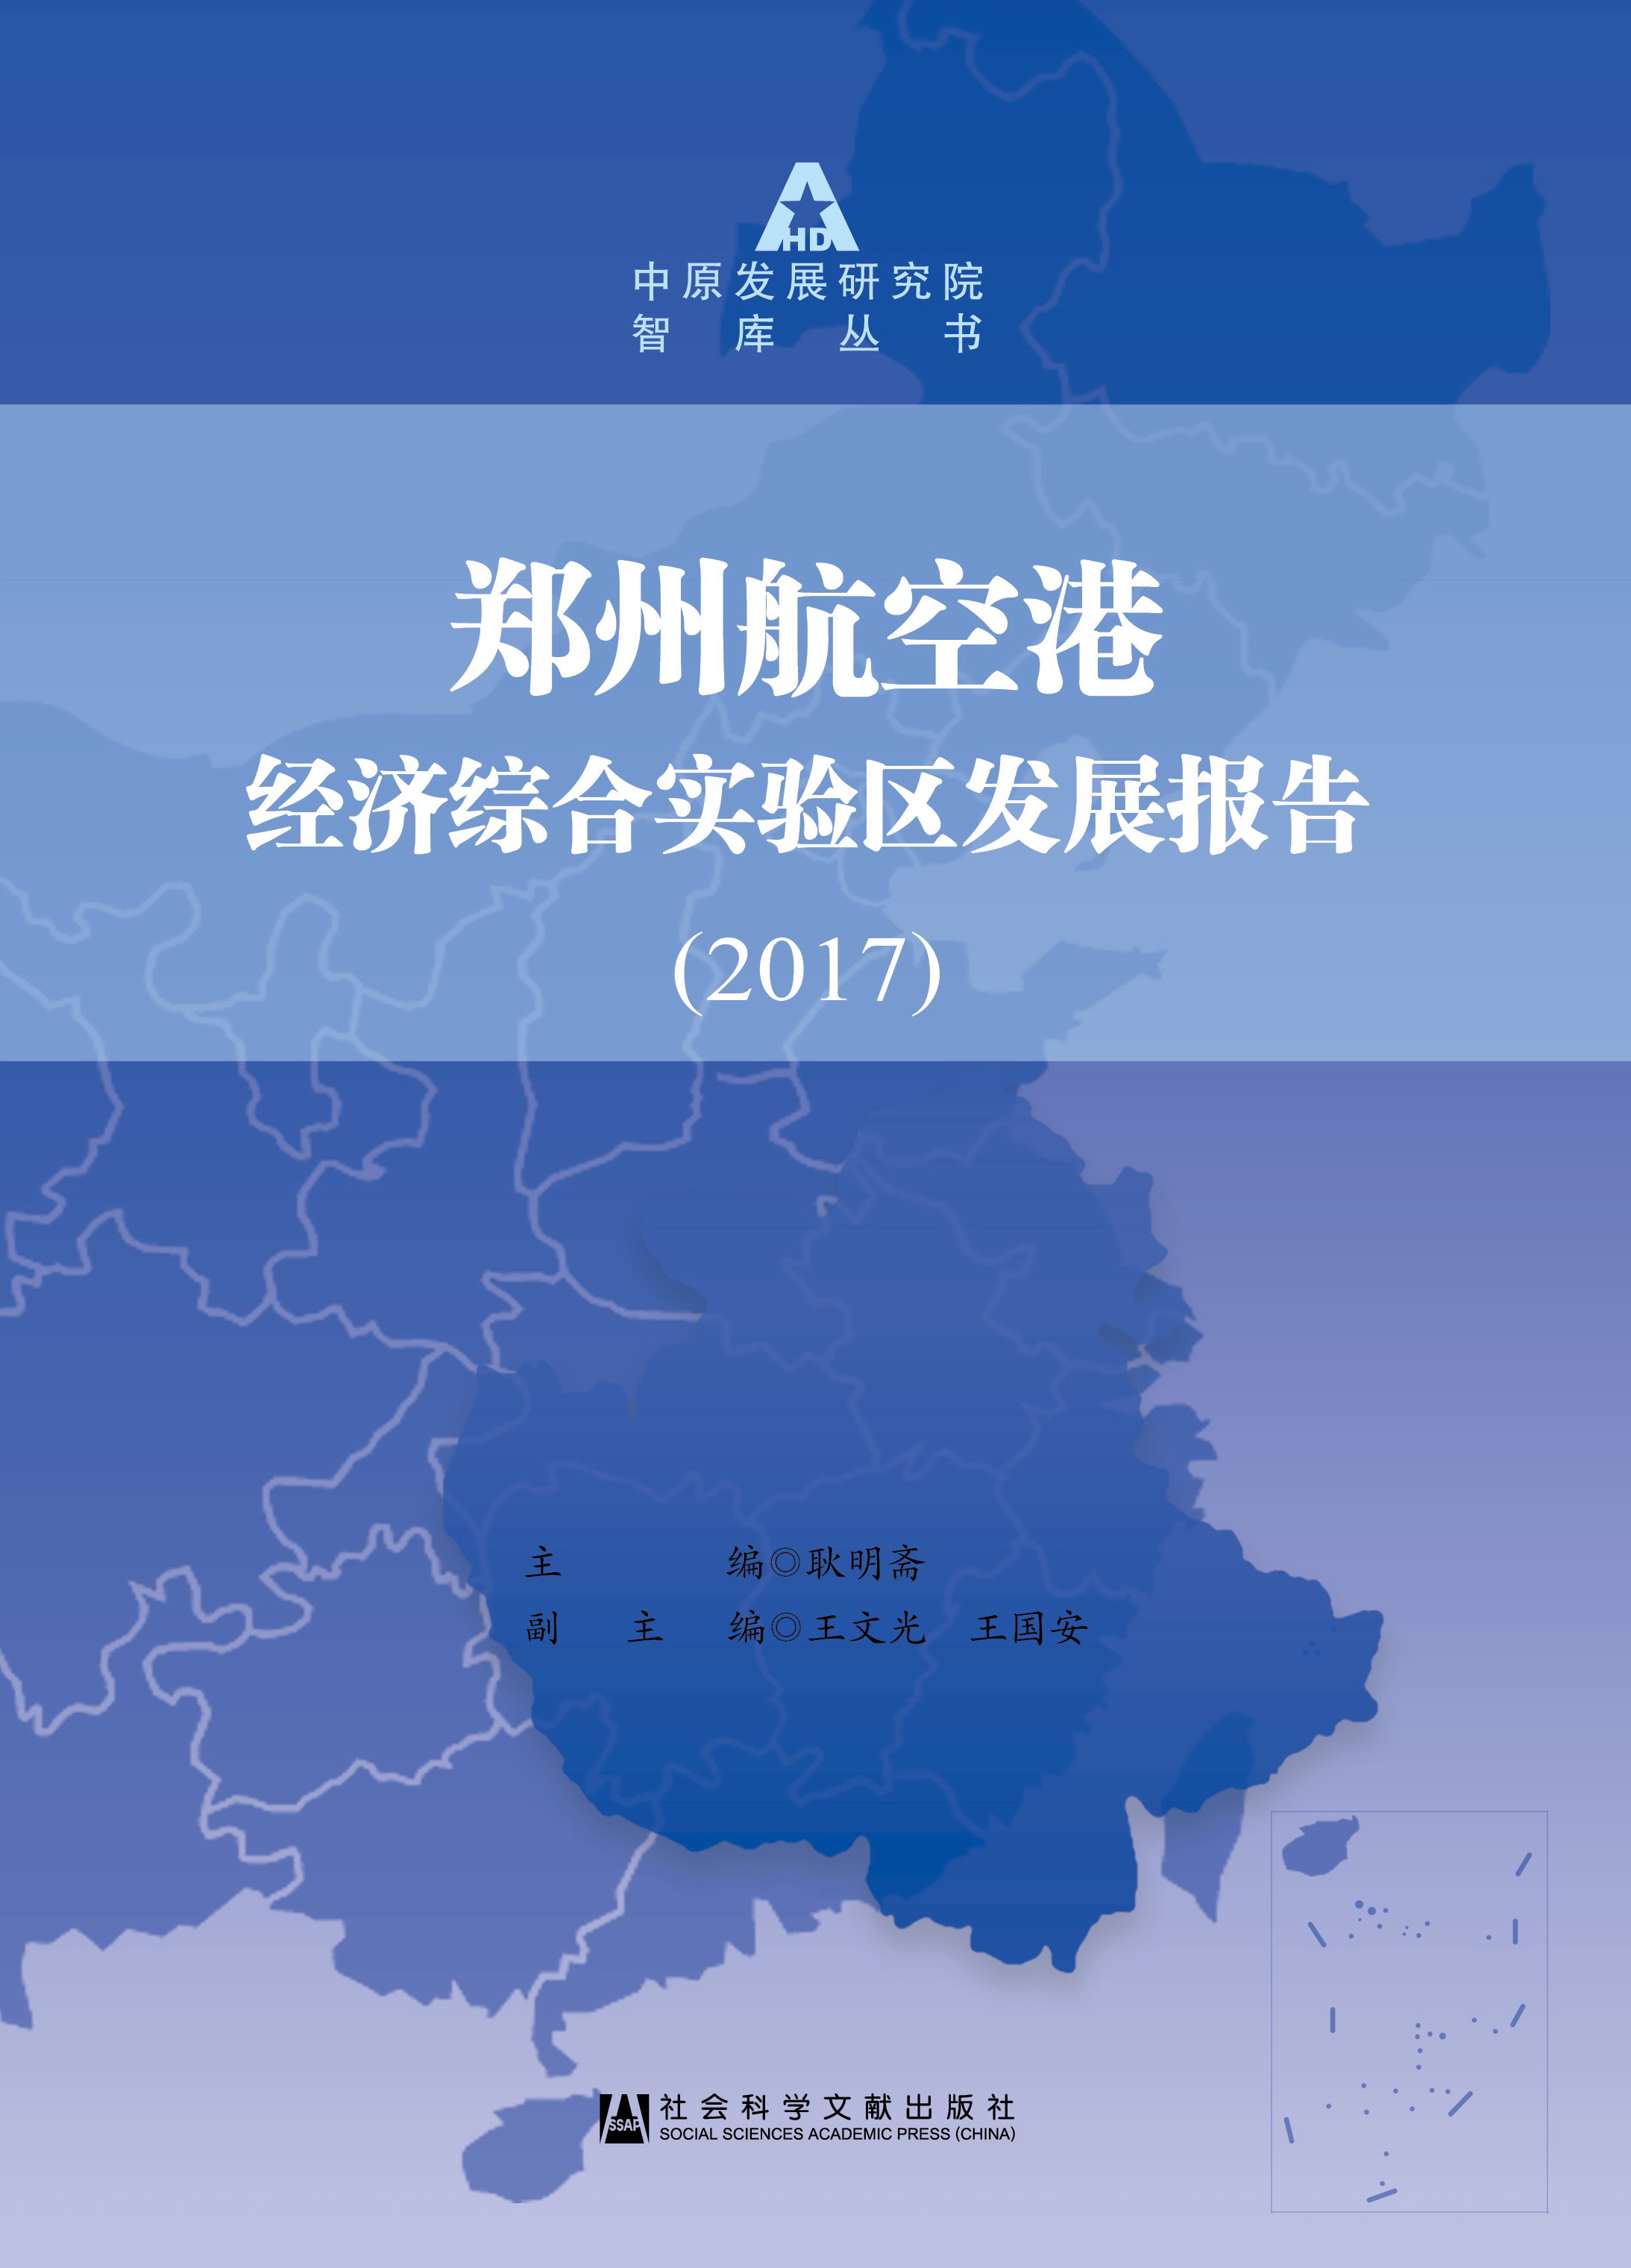 郑州航空港经济综合实验区发展报告(2017)